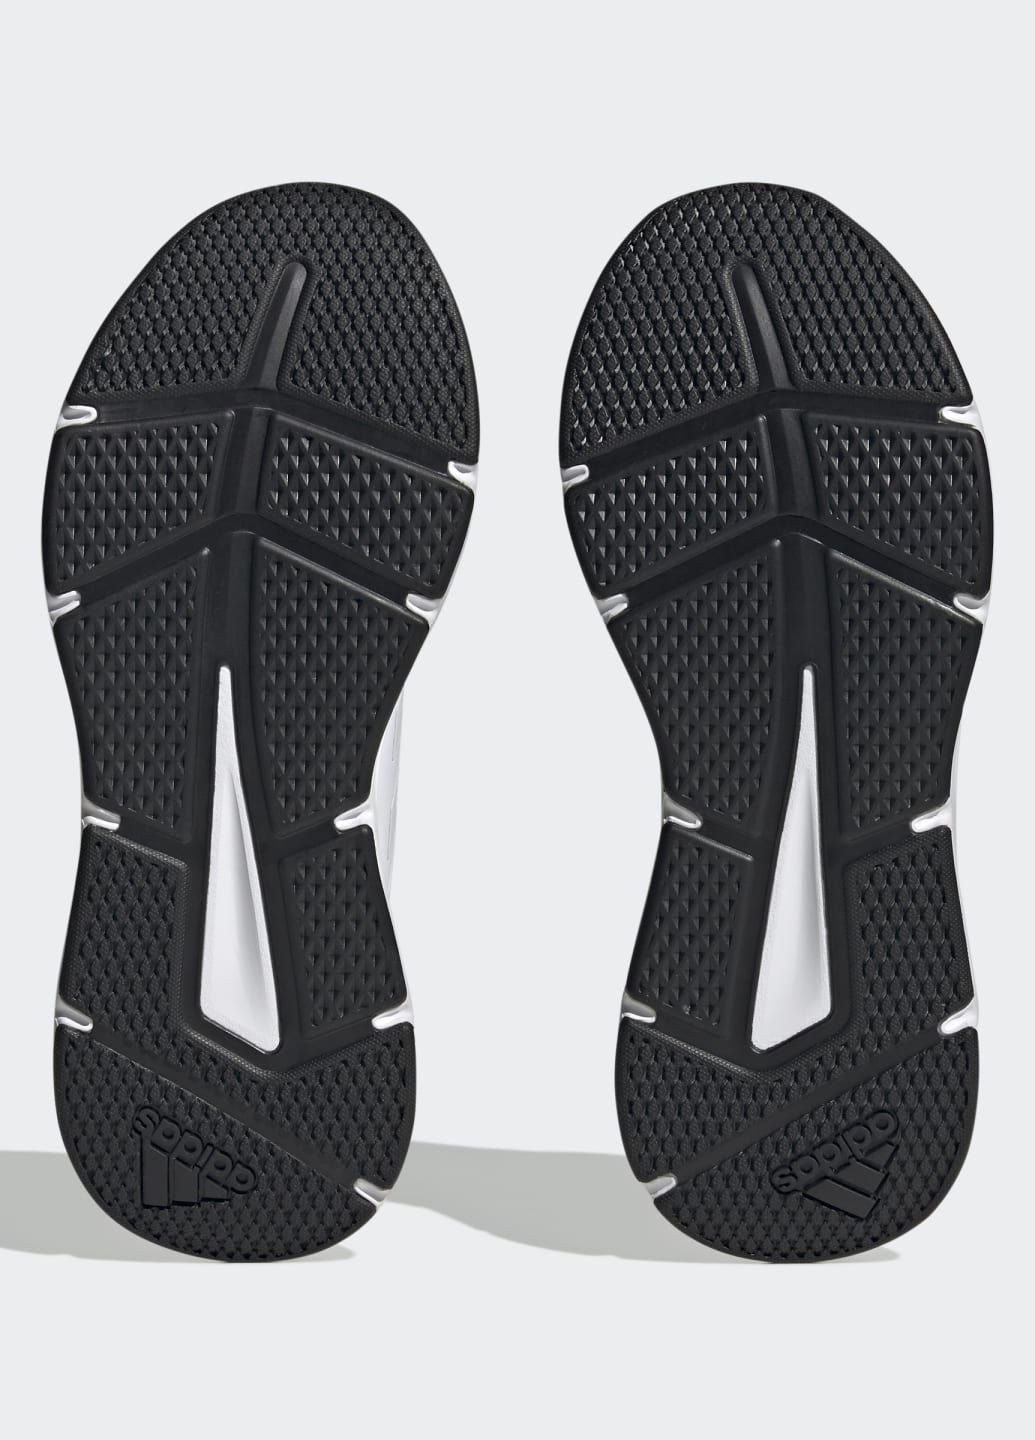 Белые всесезонные кроссовки galaxy 6 adidas